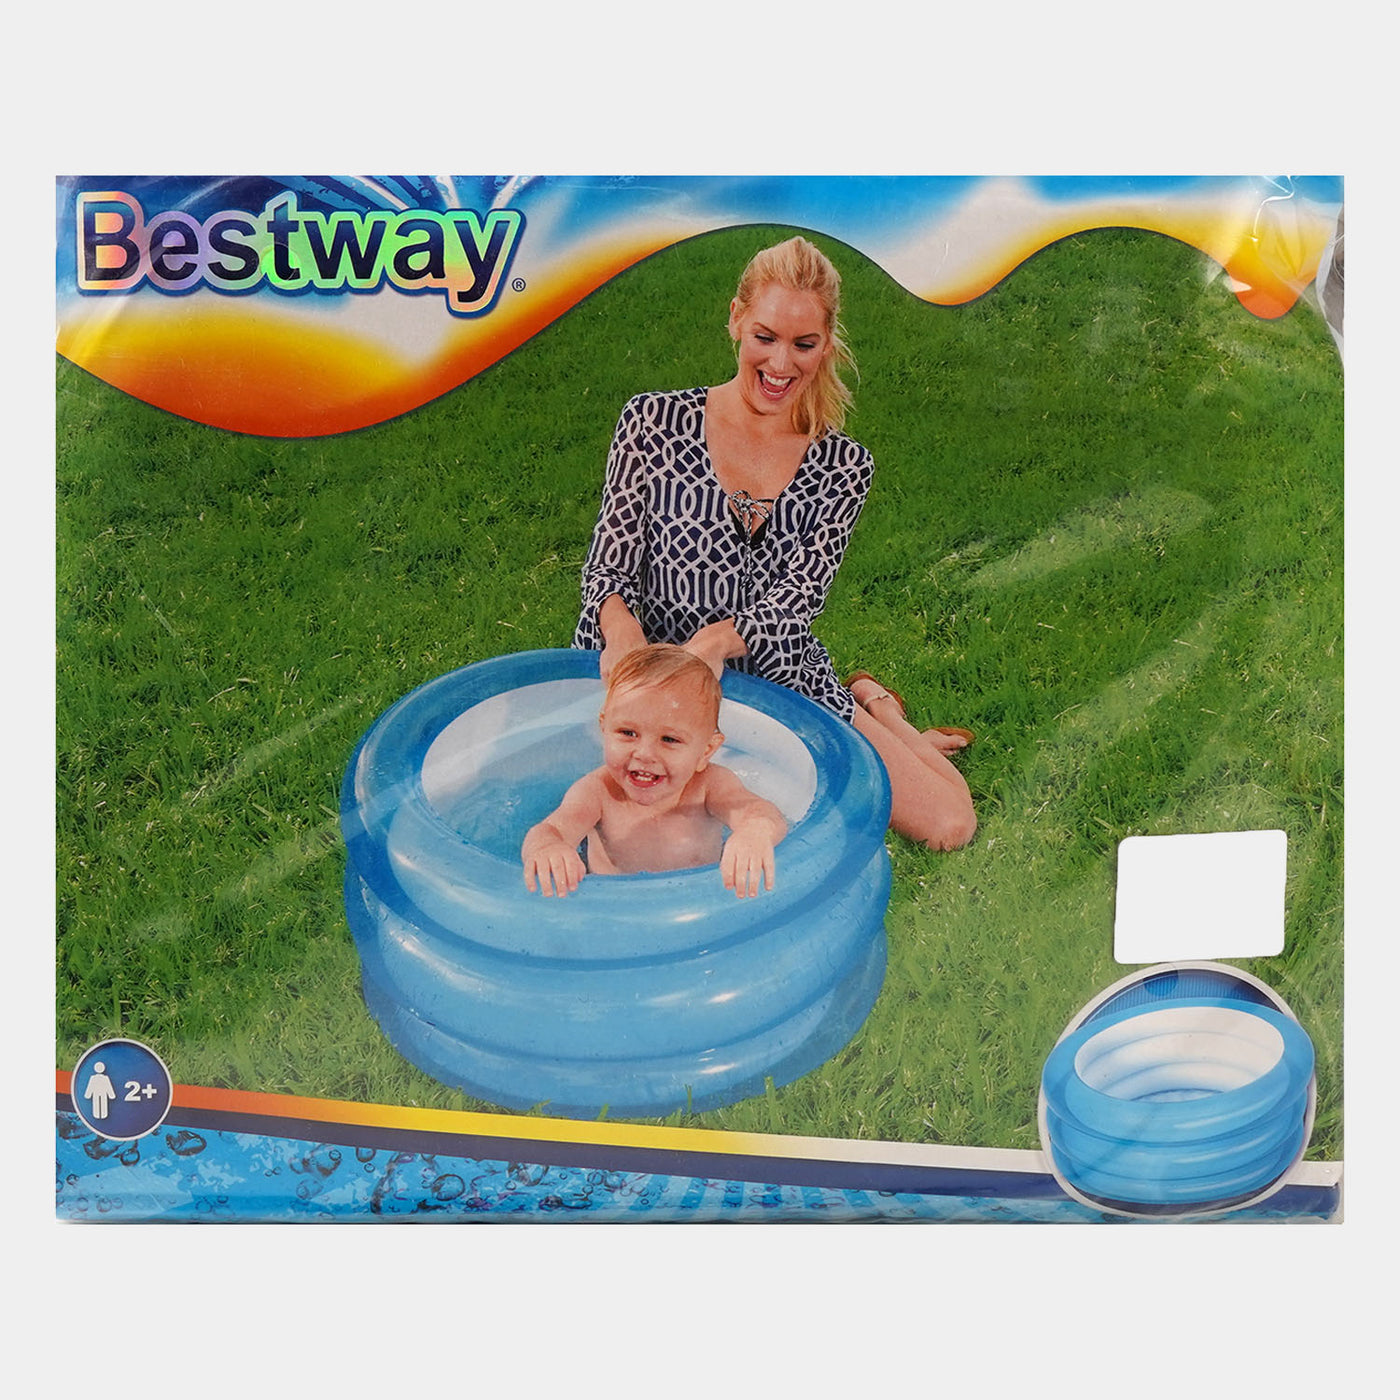 Bestway Baby Pool For kids